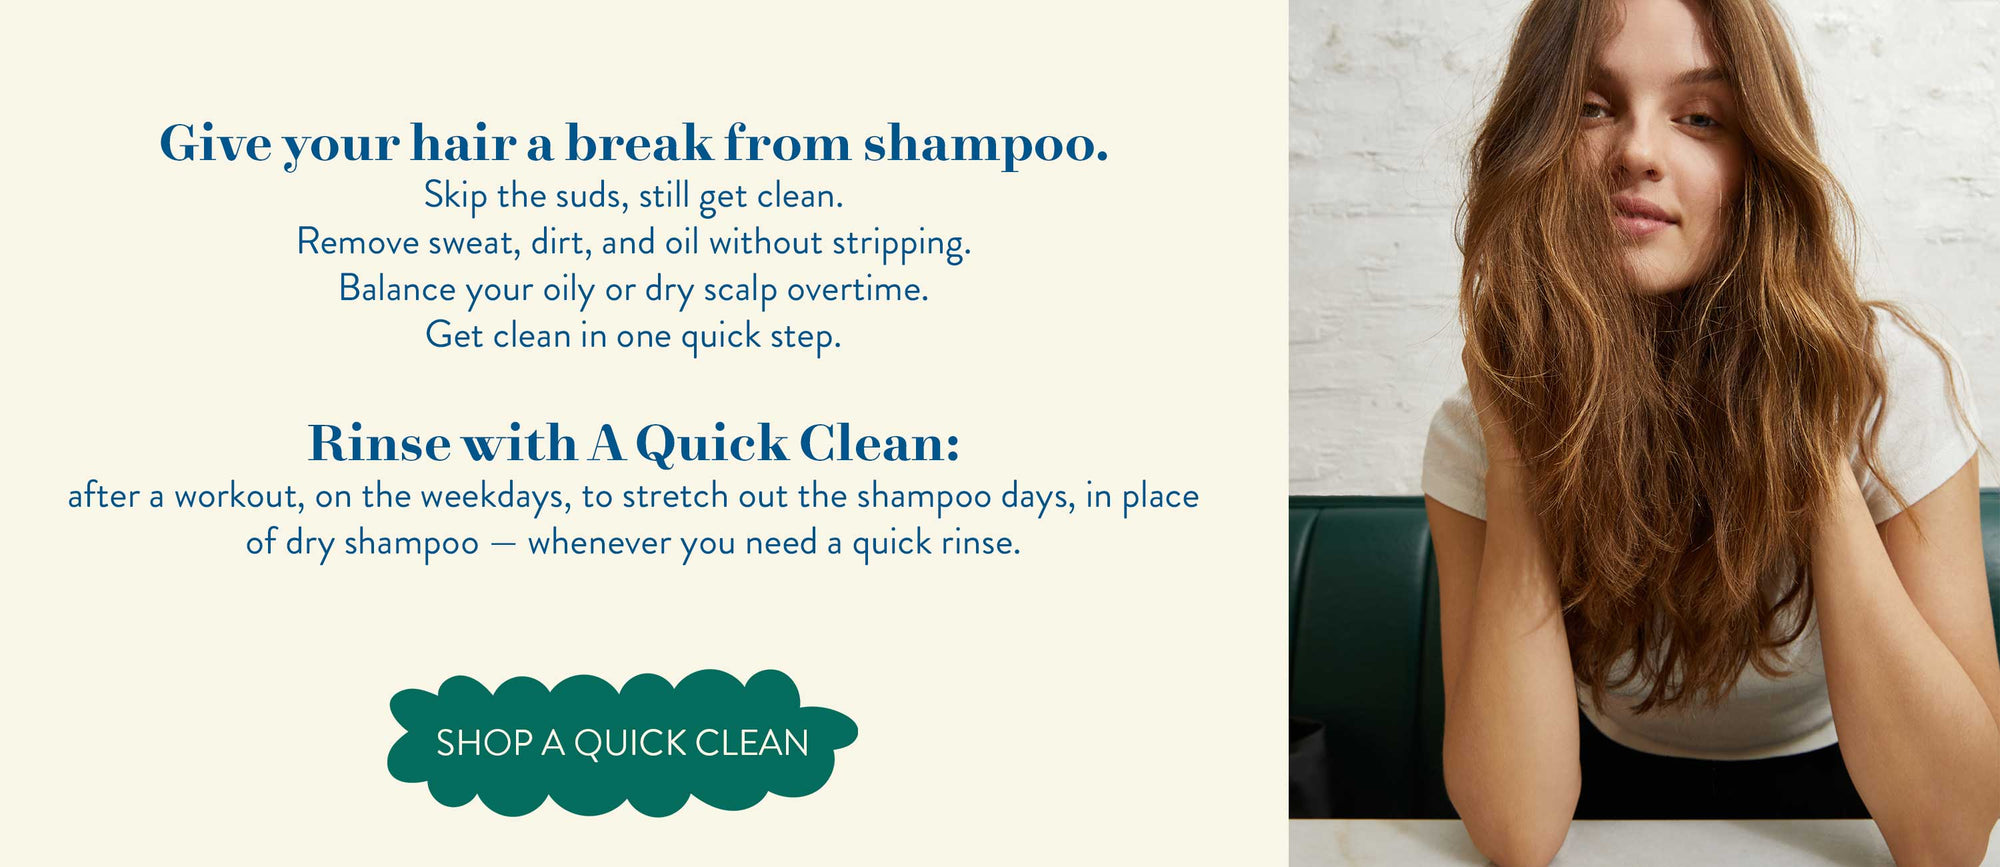 A Quick Clean Hair Rinse